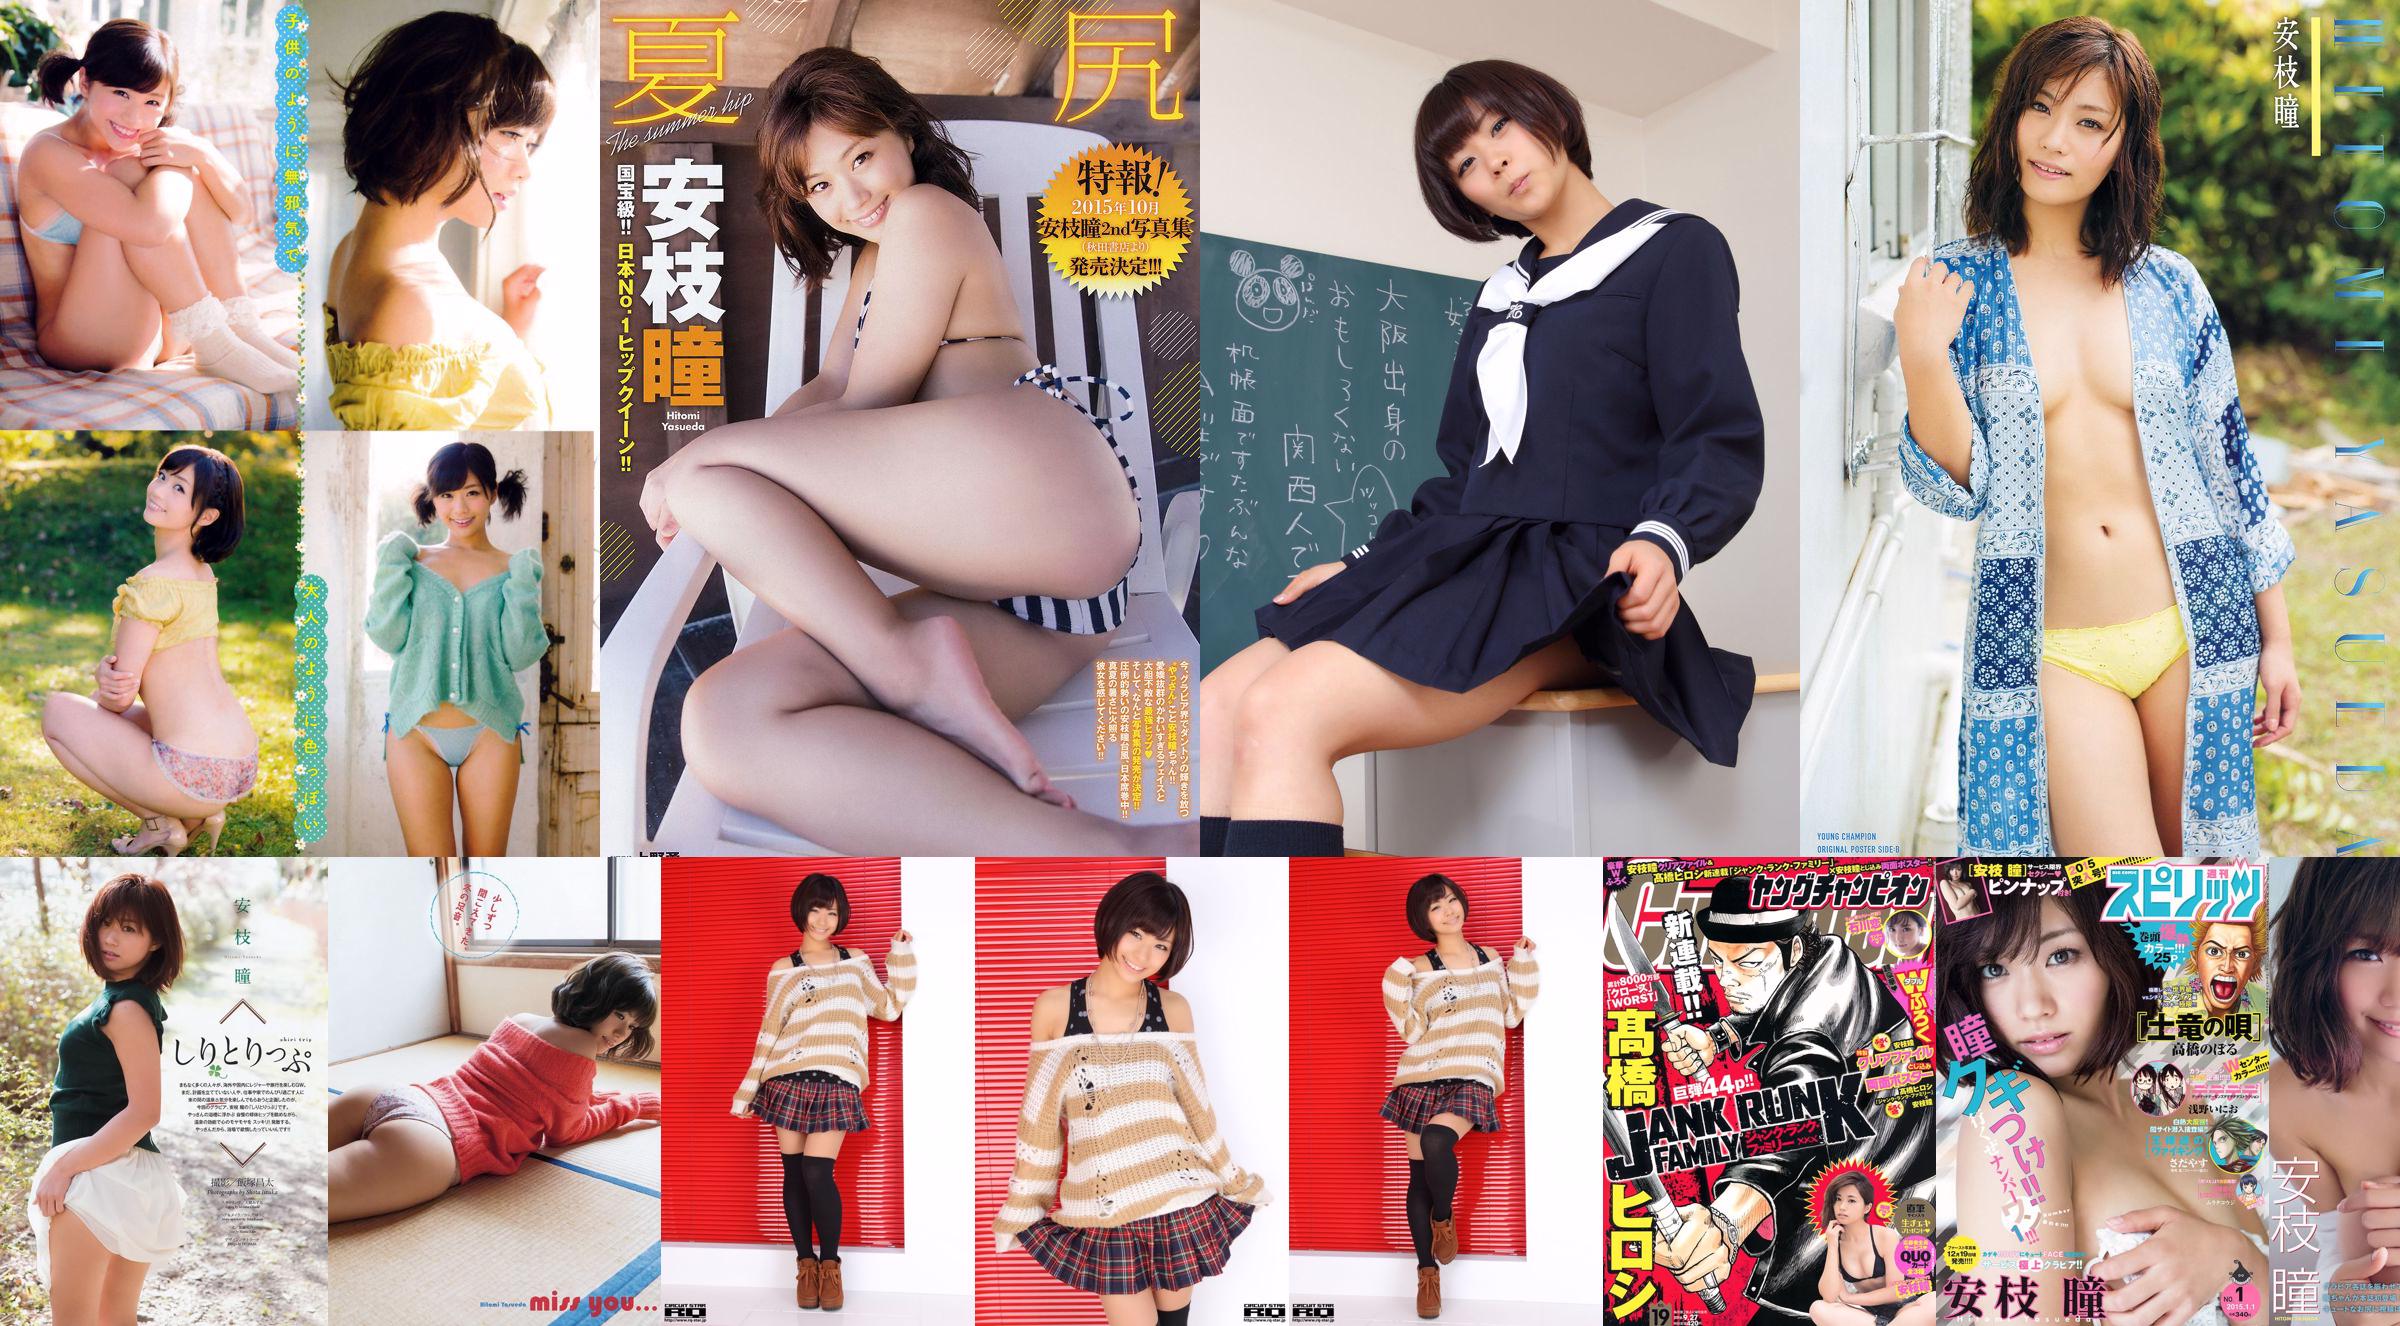 [Junger Champion] Hitomi Anji und Yukaka Uno 2015 No.18 Photo Magazine No.1fa992 Seite 1